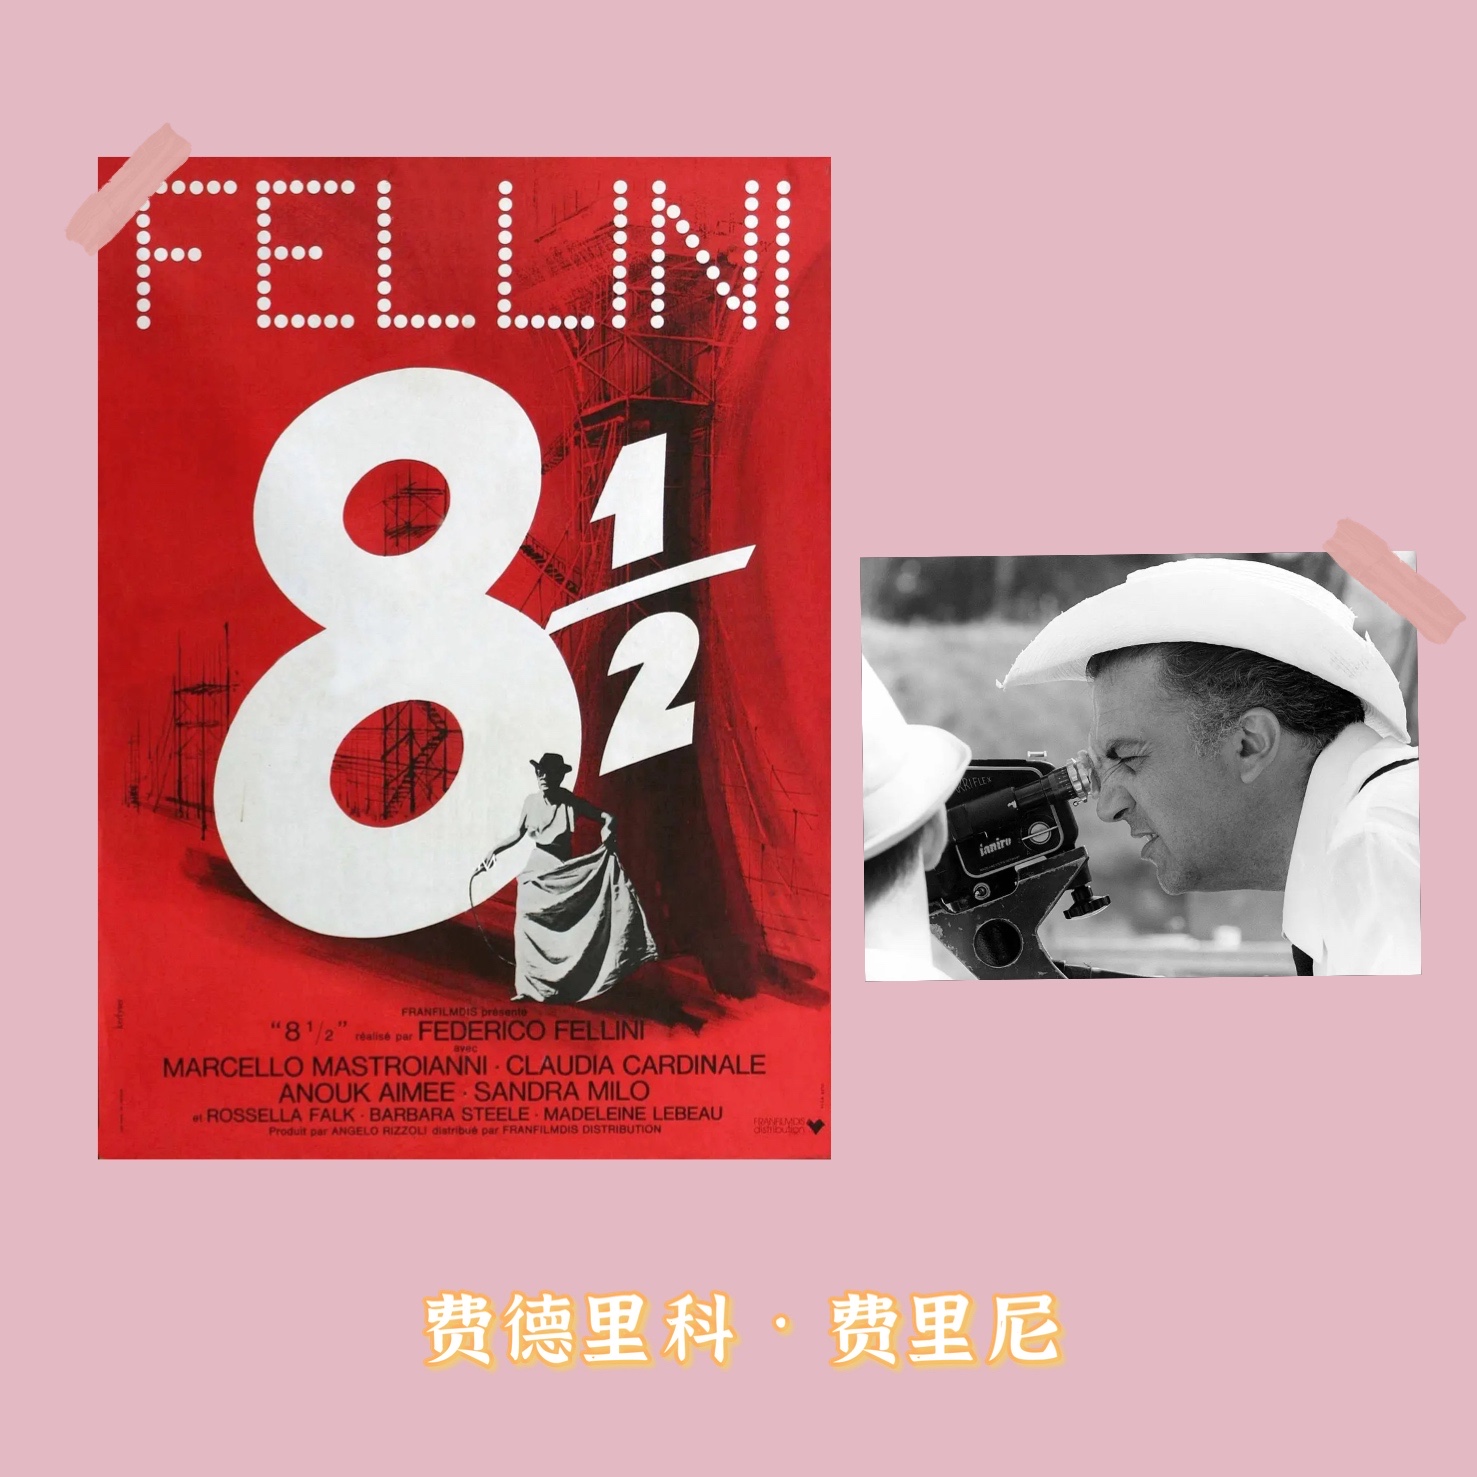 【费里尼电影合集】八部半海报/大路/卡比利亚之夜/甜蜜的生活